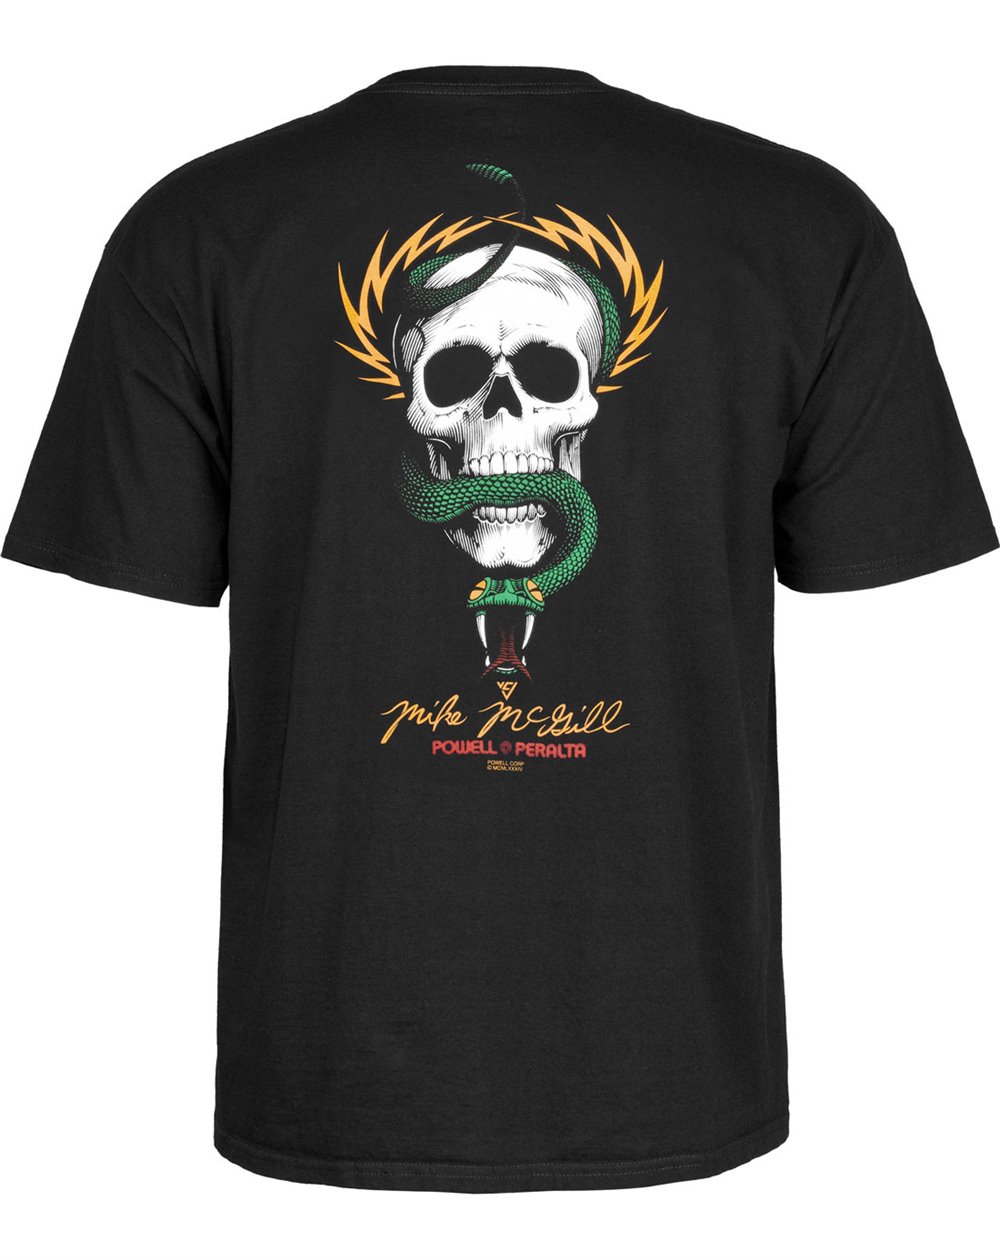 Powell Peralta Men's T-Shirt Mike McGill Skull & Snake Black